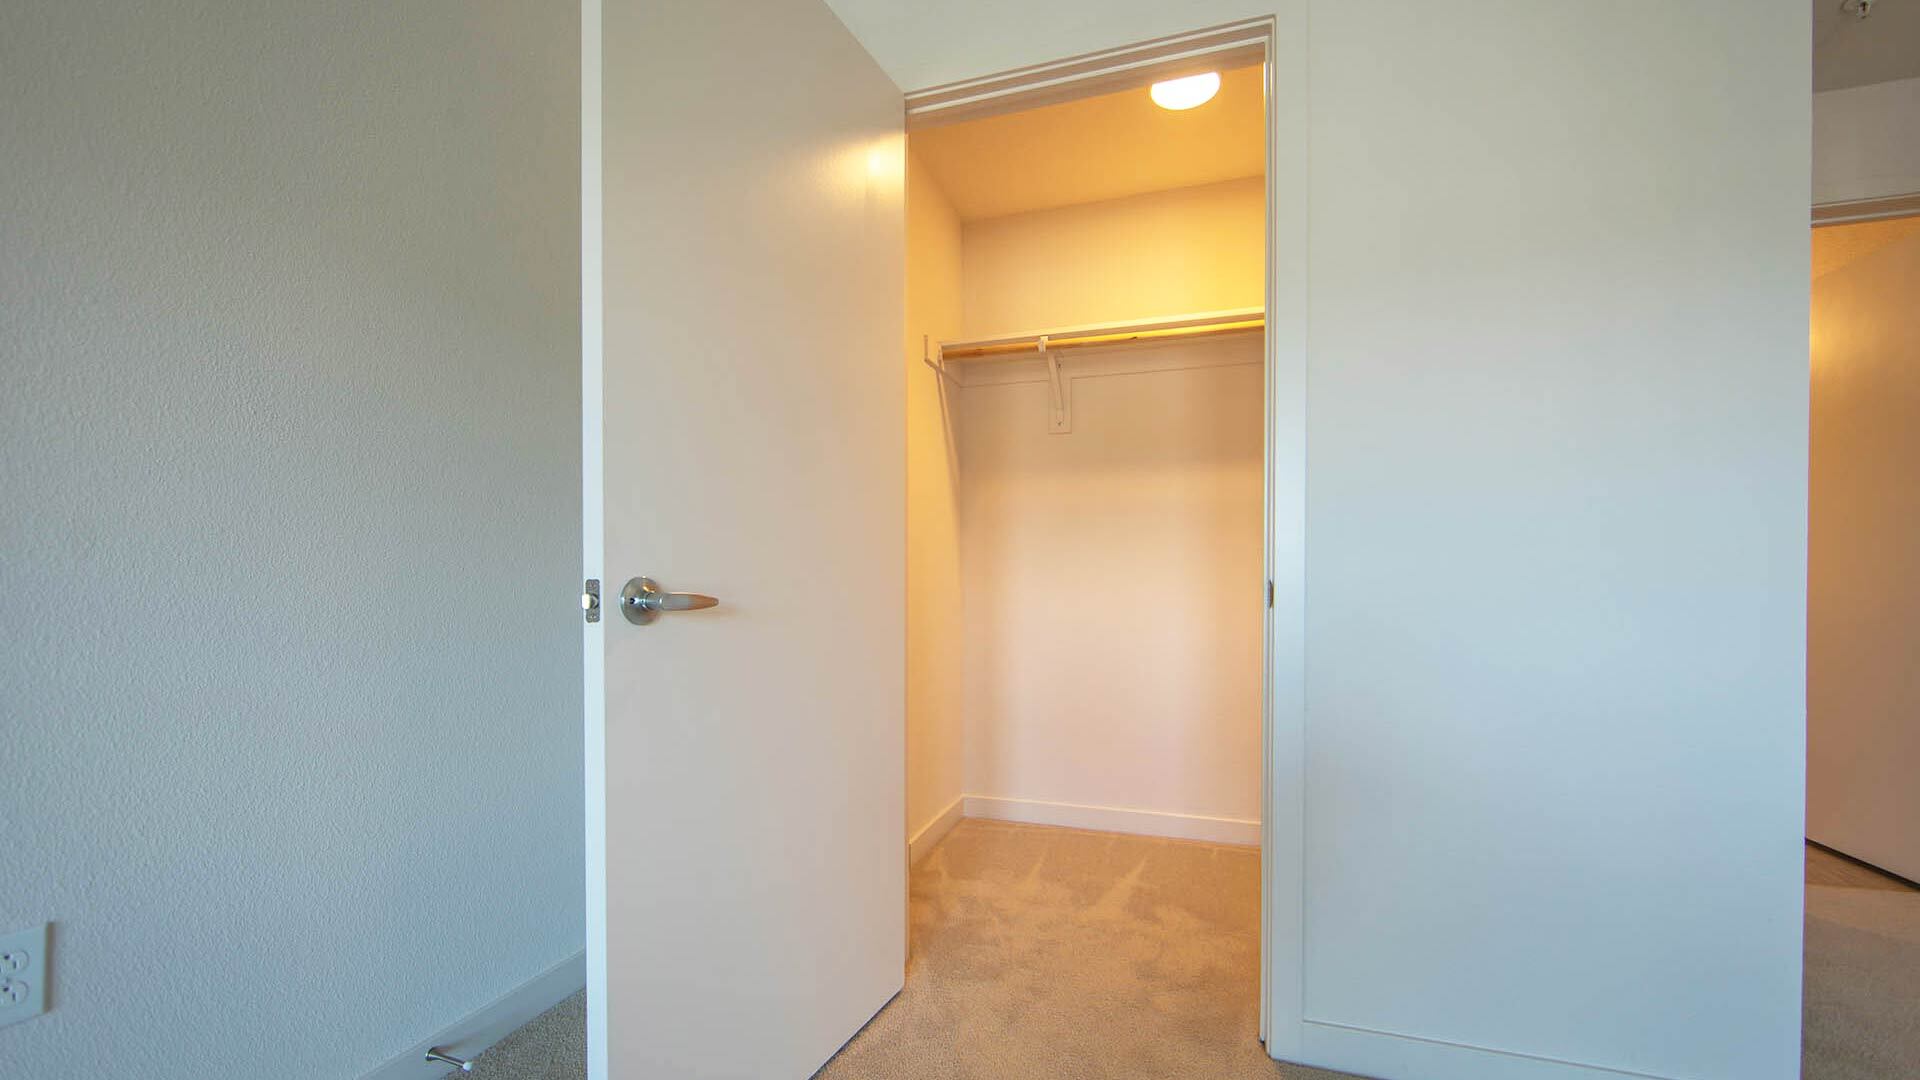 Aperture D1 floorplan bedroom closet view 2